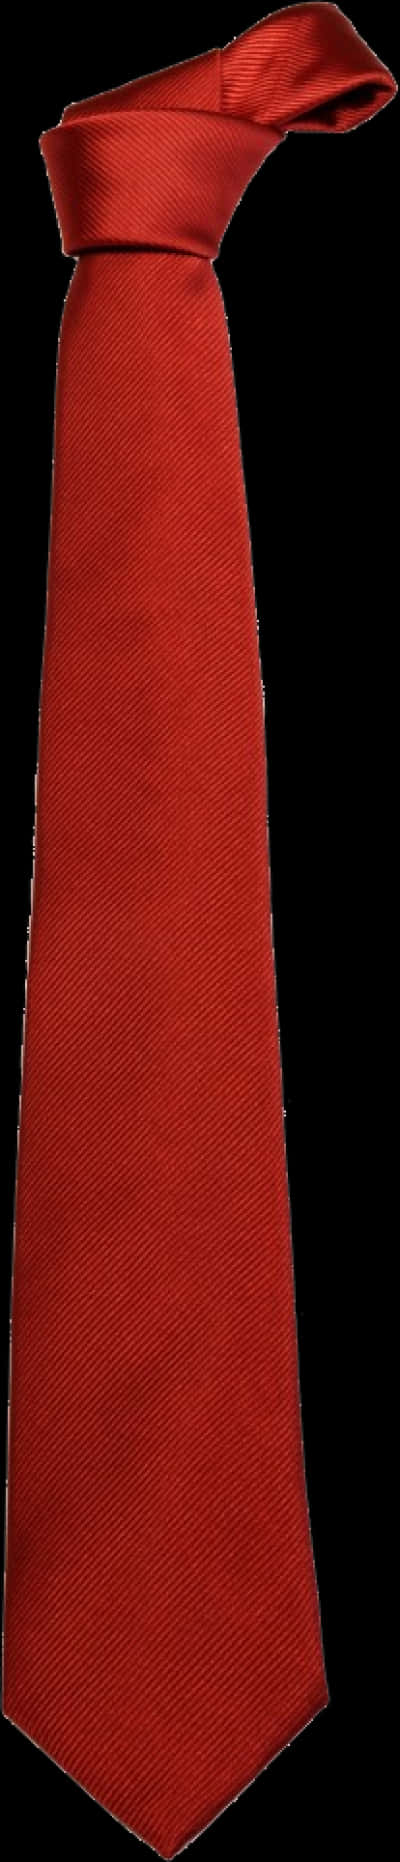 Elegant Red Necktie PNG